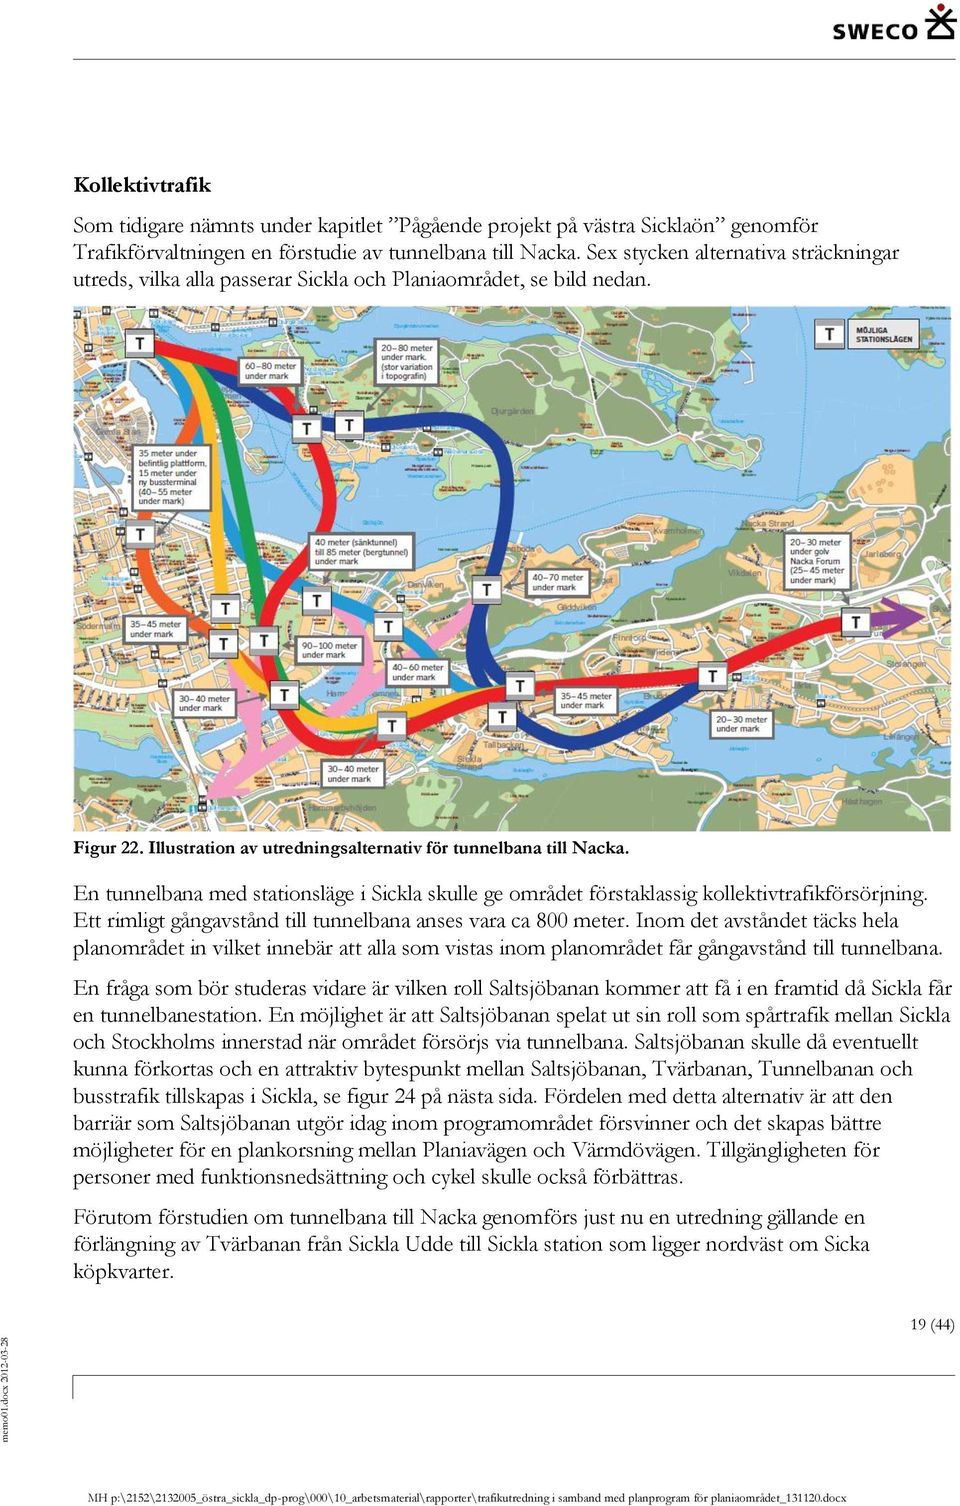 En tunnelbana med stationsläge i Sickla skulle ge området förstaklassig kollektivtrafikförsörjning. Ett rimligt gångavstånd till tunnelbana anses vara ca 800 meter.